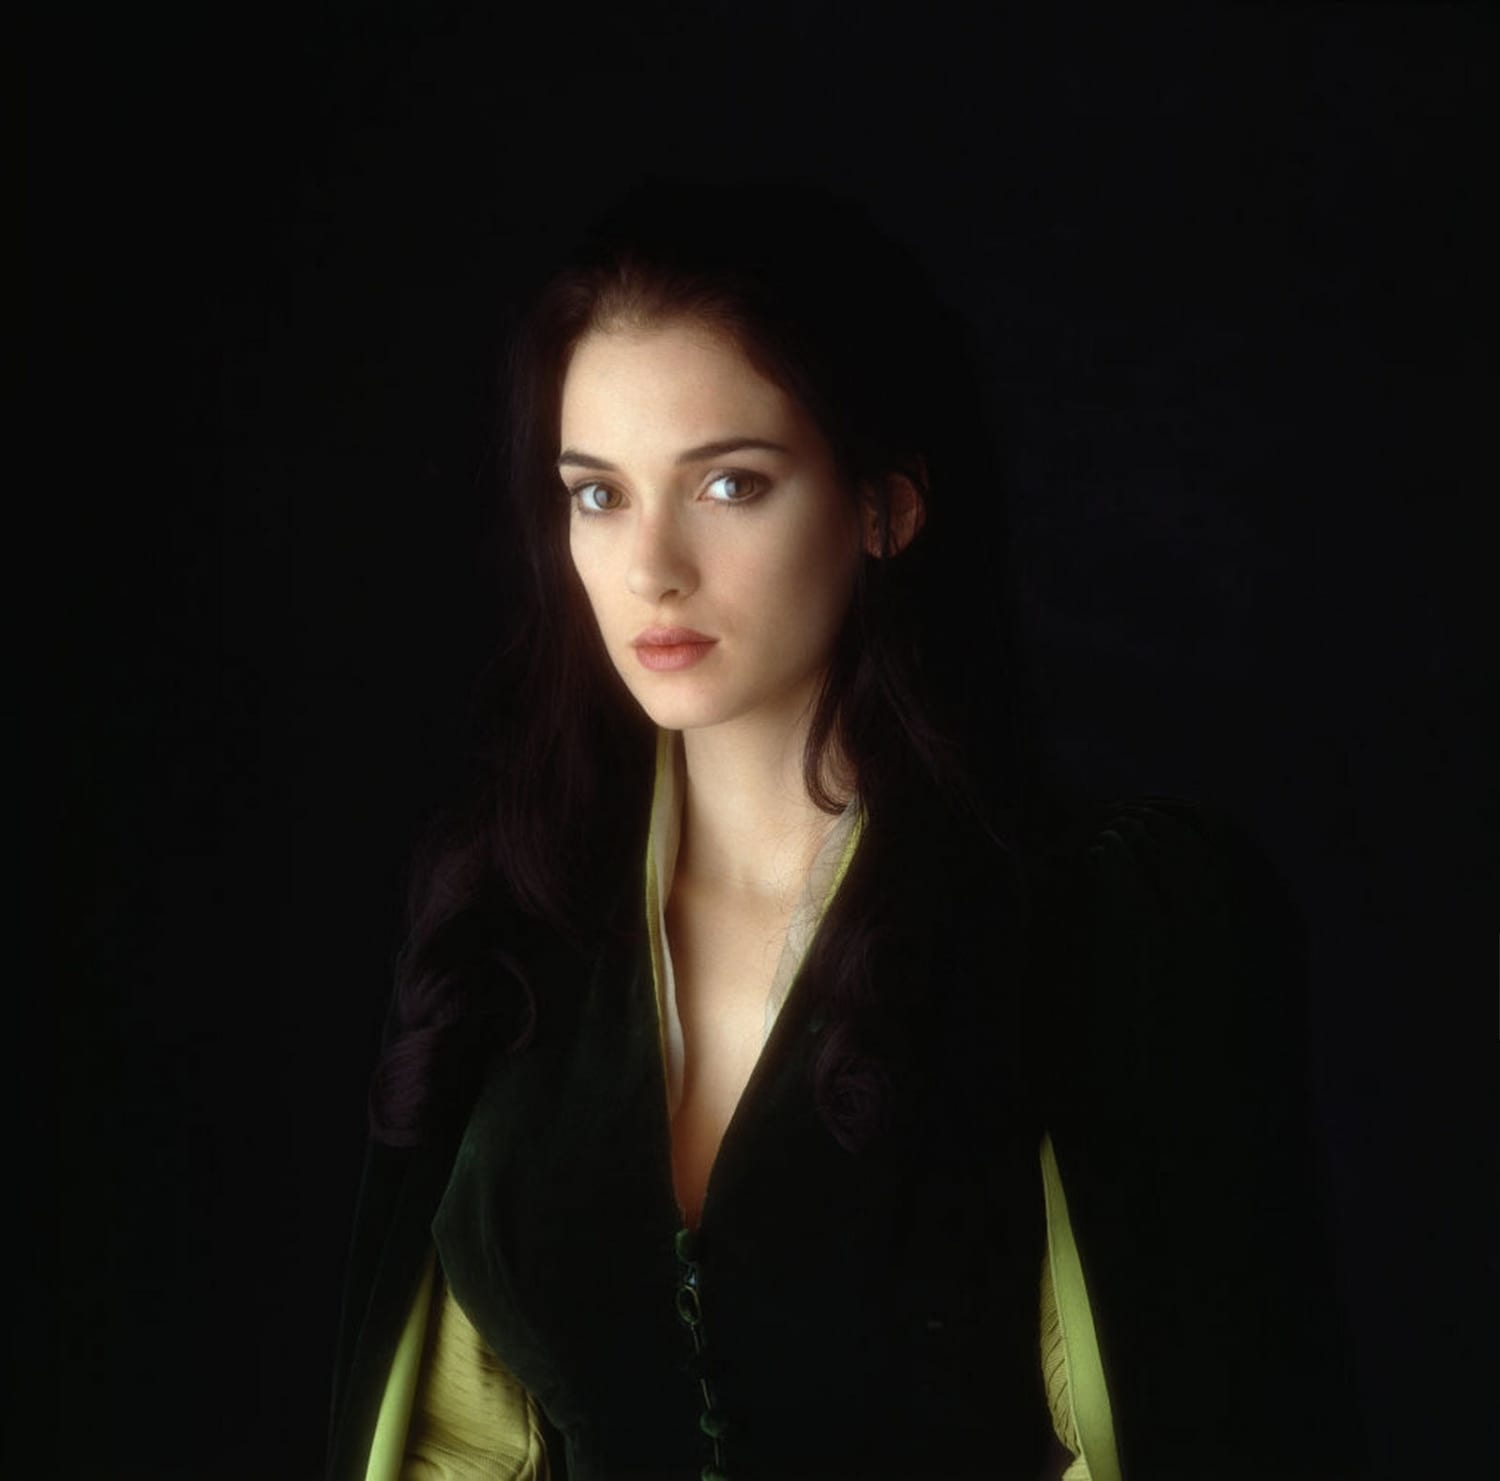 Winona Ryder on the set of 'Dracula' 1991